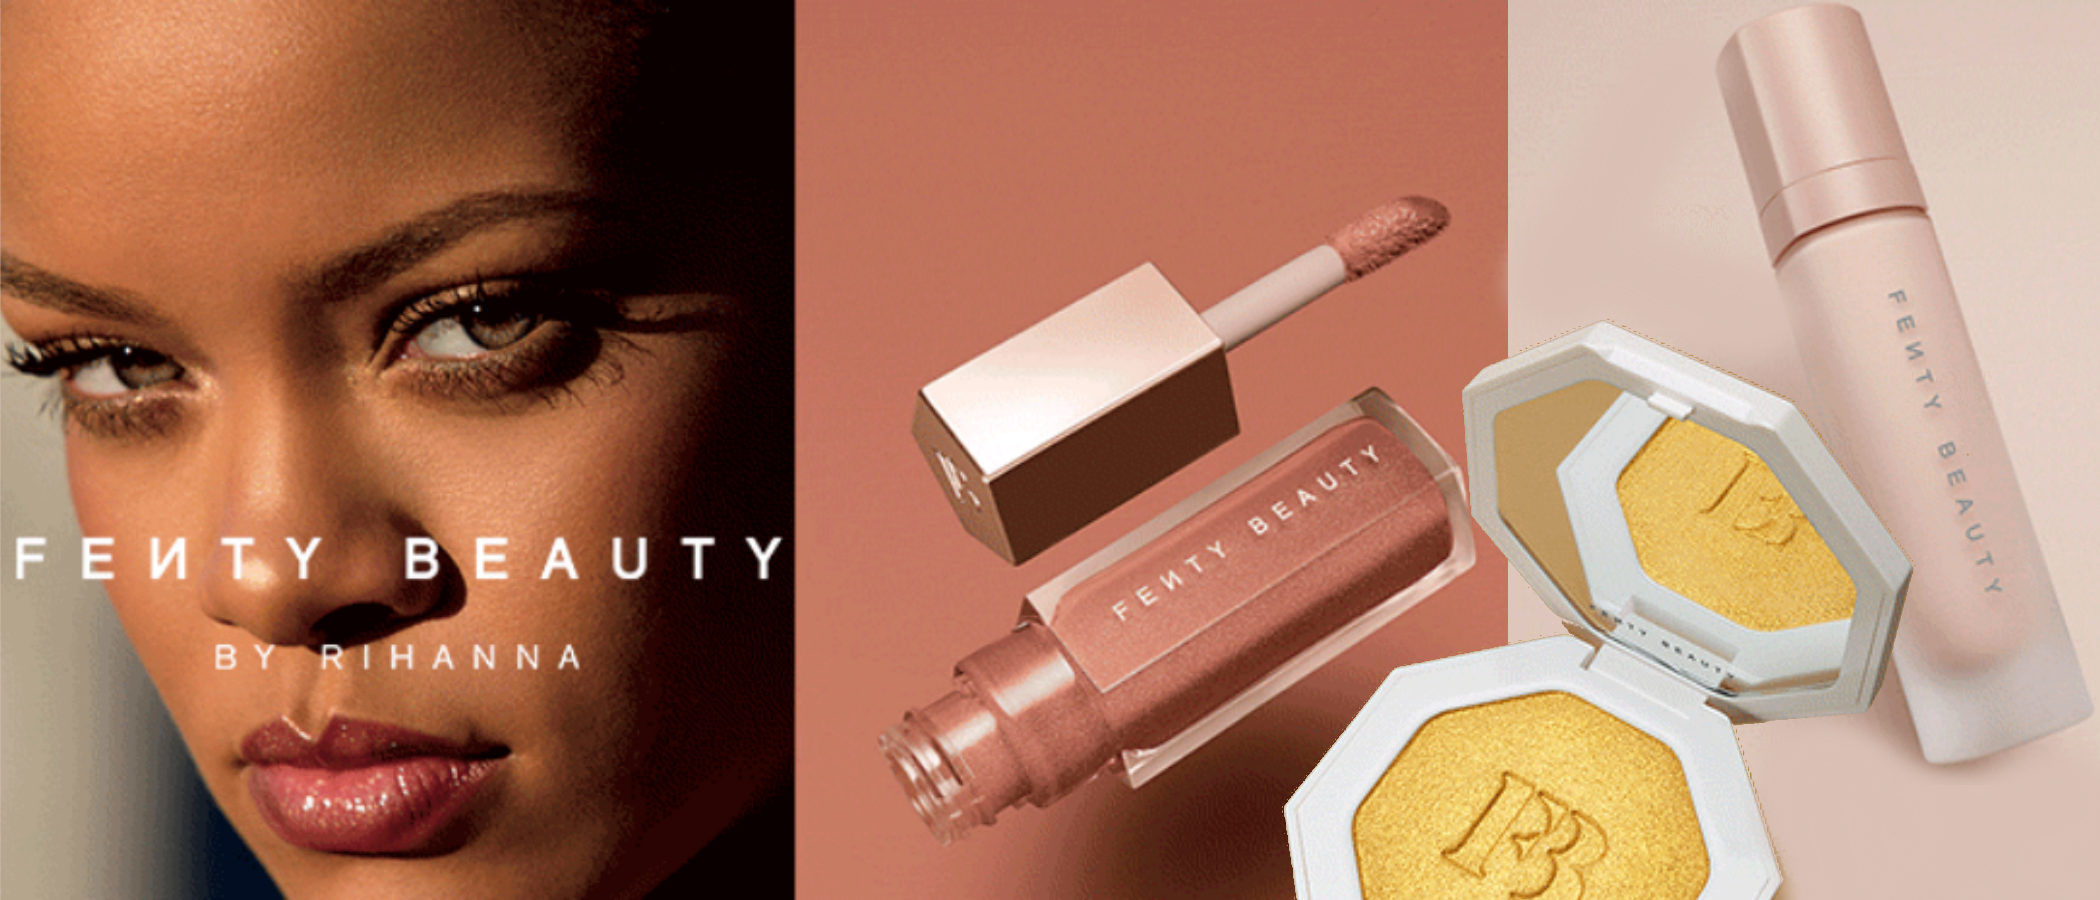 'Fenty Beauty by Rihanna', la esperada colección de maquillaje de la cantante